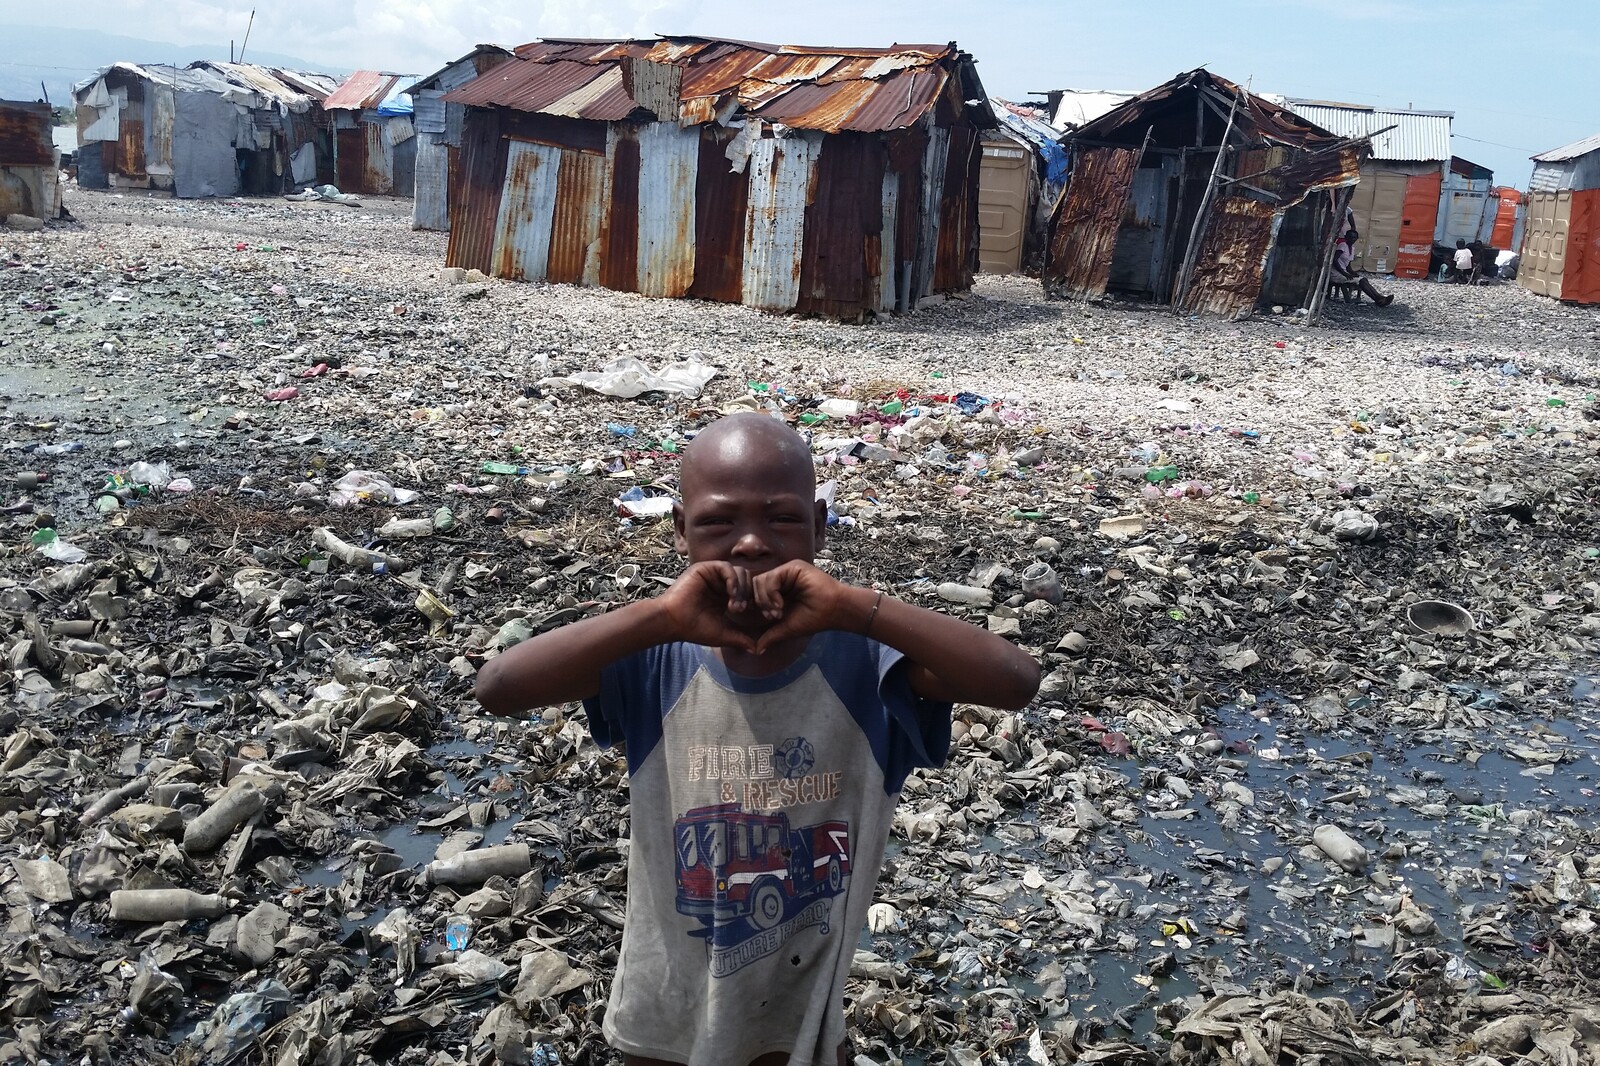 Ein Junge steht in einer Wellblechhüttensiedlung in einem der vielen Viertel Haitis, die von Armut und großer Not gezeichnet sind. Durch das schwere Erdbeben und den Hurrikan hat sich die Lage für viele weiter verschlimmert.